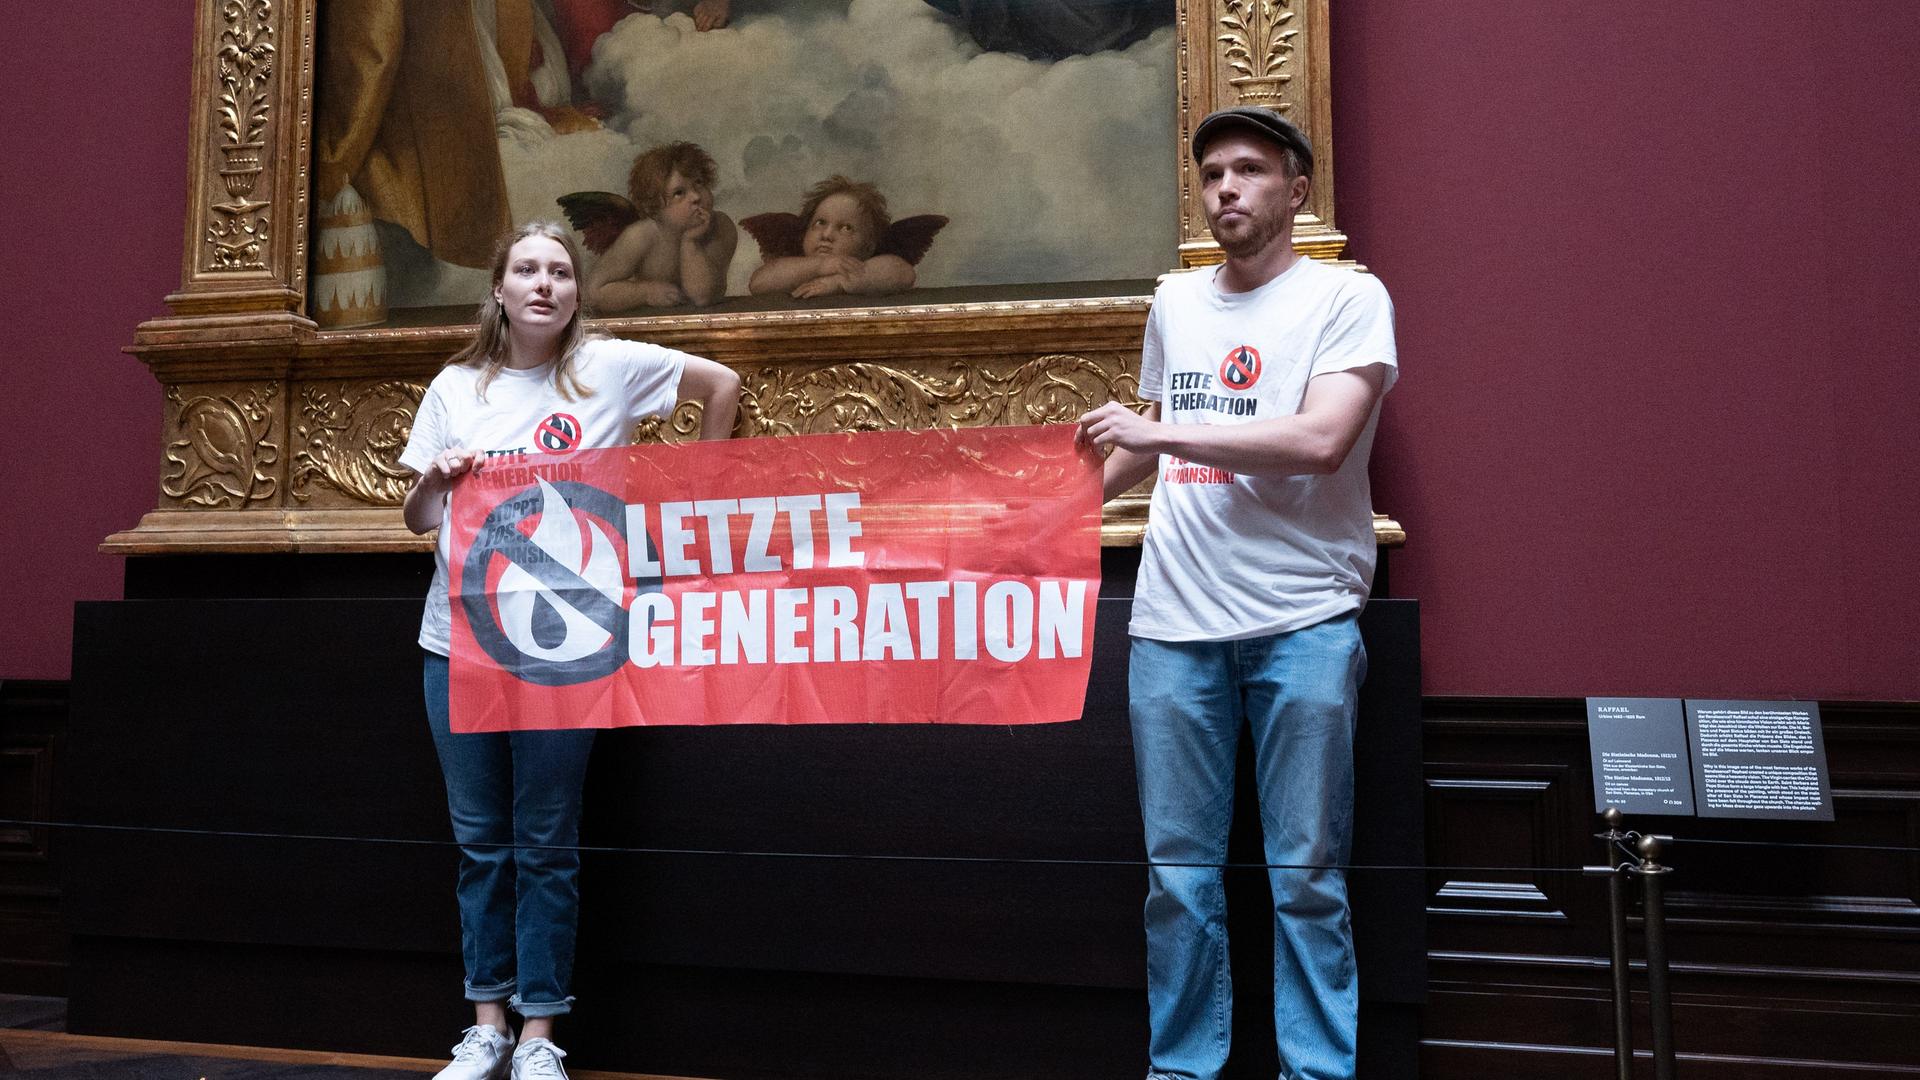 Sachsen, Dresden: Zwei Umweltaktivisten der Gruppe "Letzte Generation" stehen mit einem Banner in der Gemäldegalerie Alte Meister an dem Gemälde "Sixtinische Madonna" von Raffael. Sie haben jeweils eine Hand am Rahmen des Bildes geklebt.